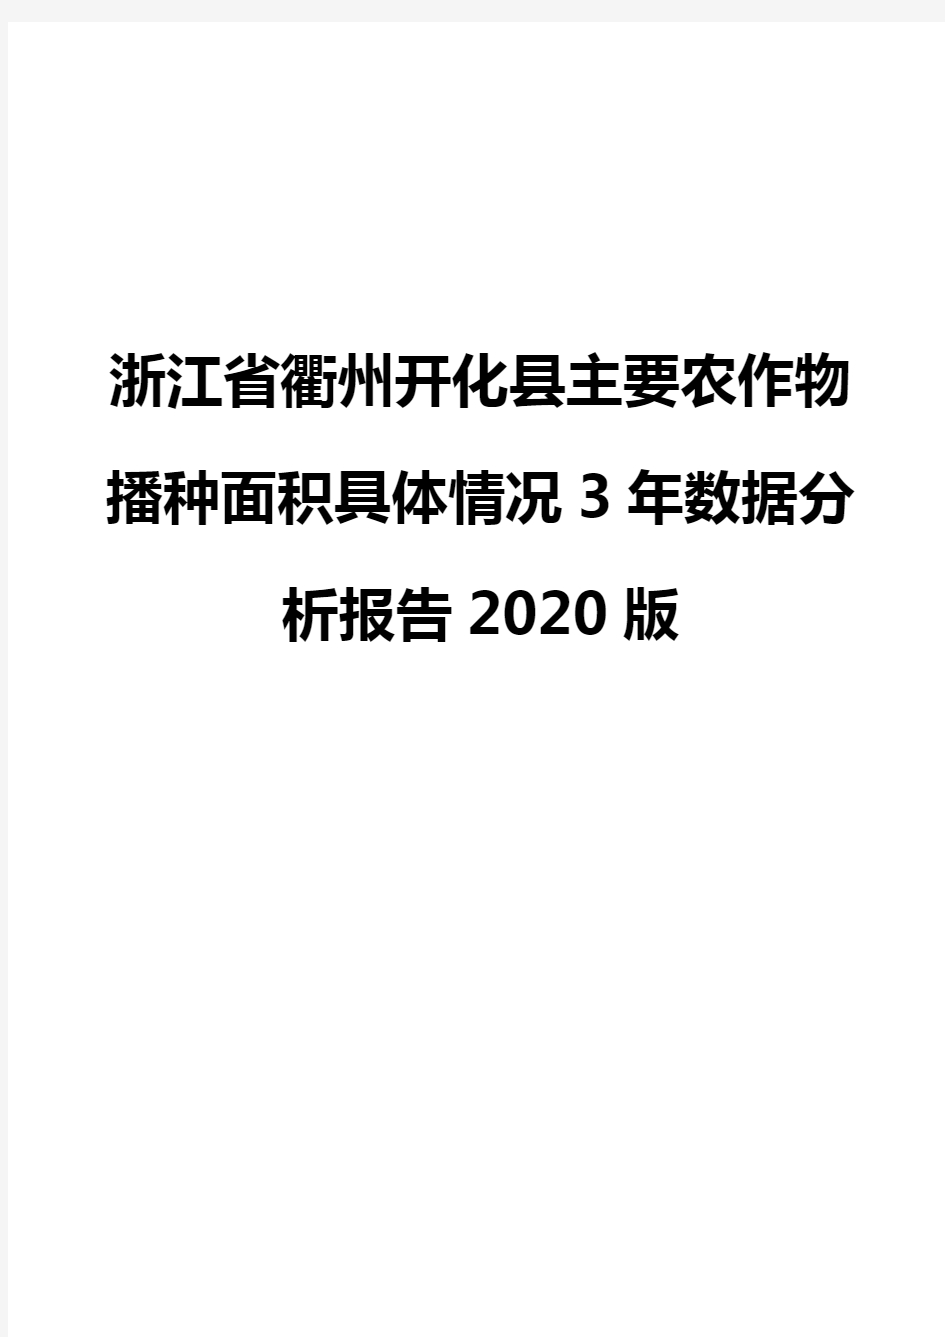 浙江省衢州开化县主要农作物播种面积具体情况3年数据分析报告2020版